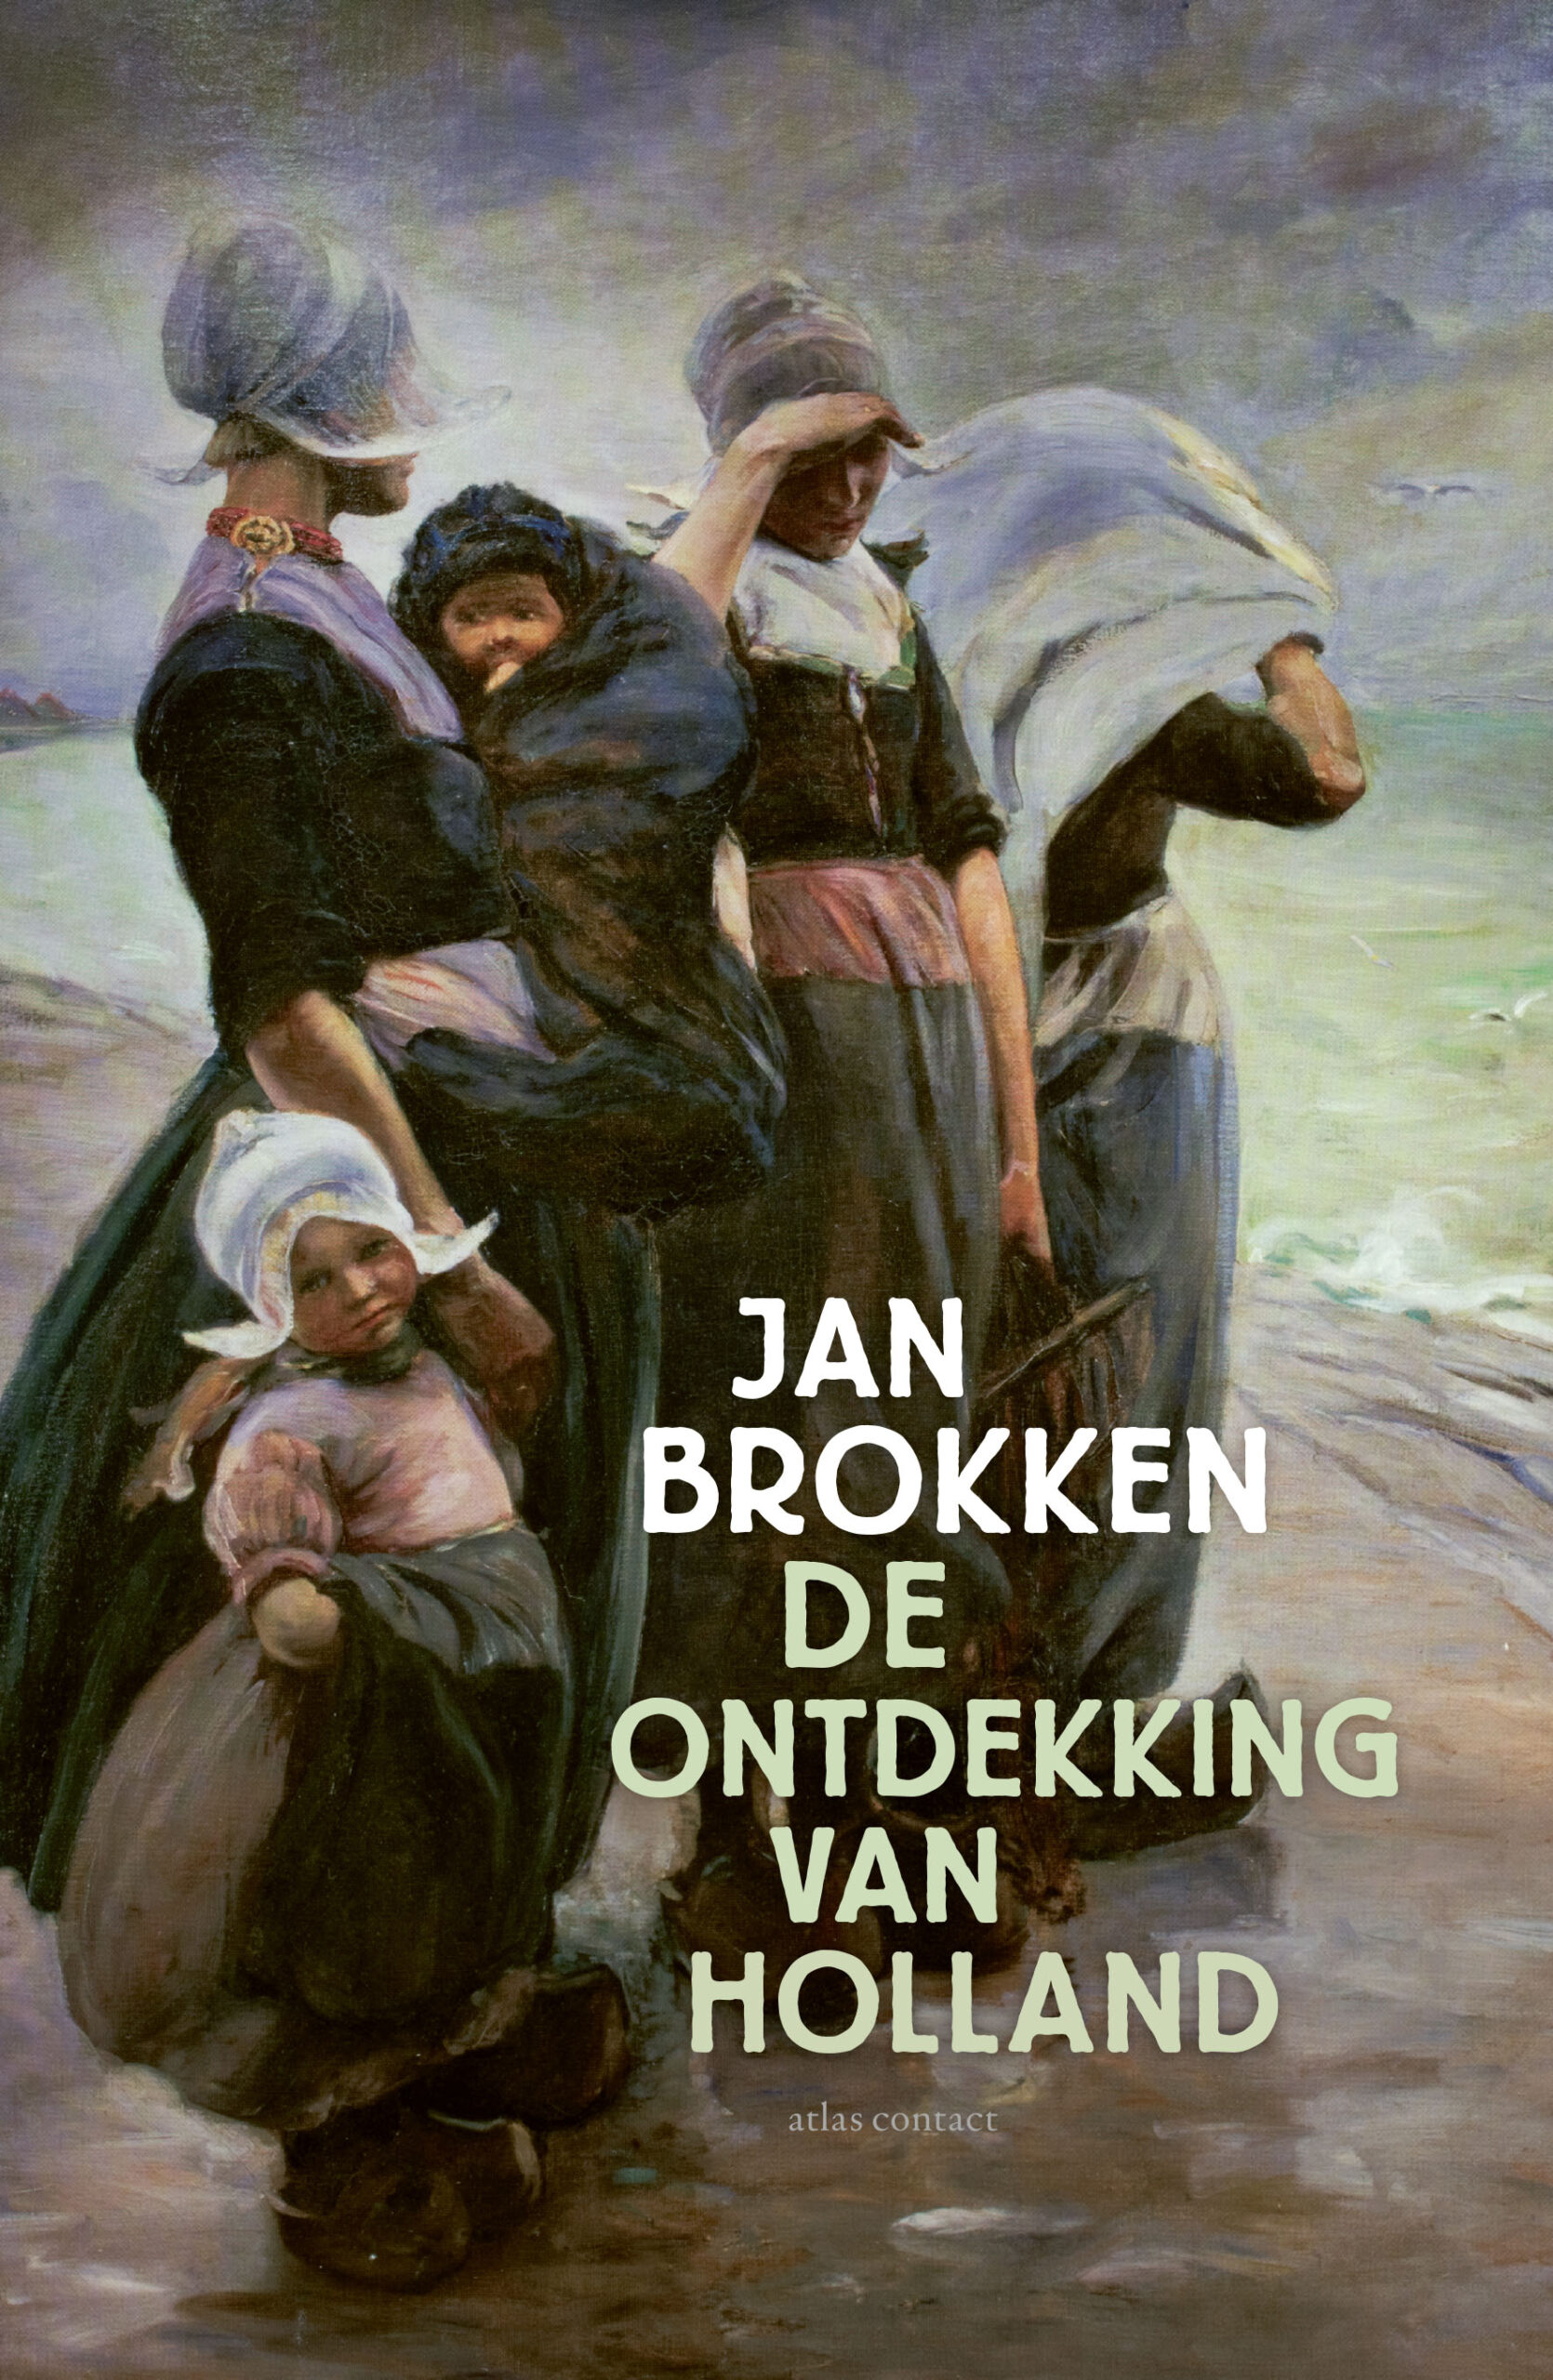 Jan Brokken over ‘De ontdekking van Holland’ in Edam